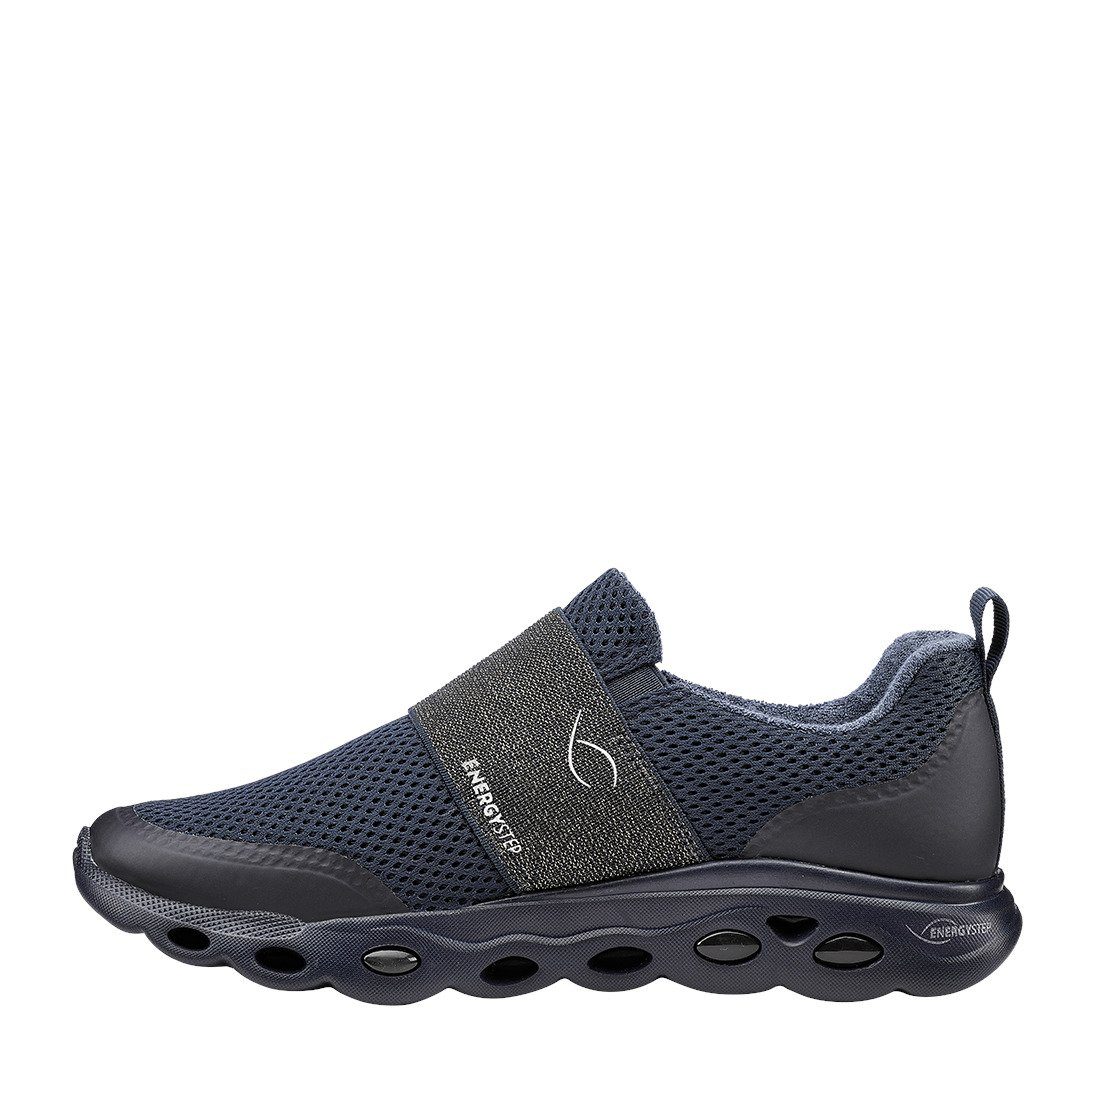 Malibu Schuhe, - Damen Slipper Textil Ara Ara Slipper 043657 blau